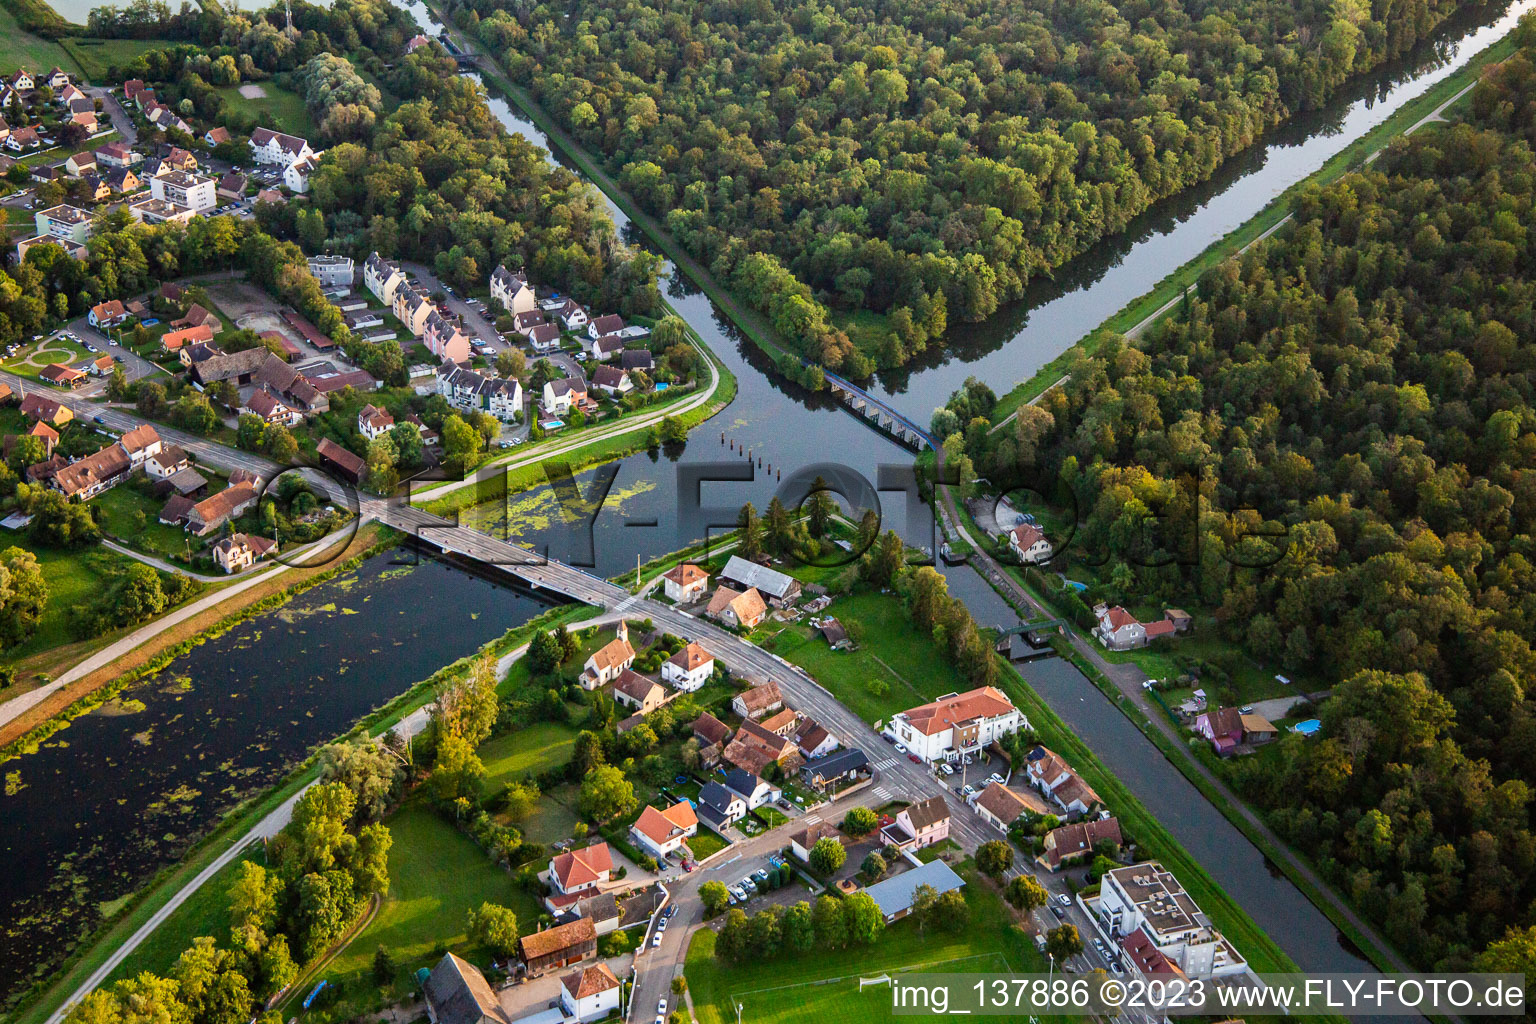 Luftbild von Kreuzung der Kanäle Canal de Décharge de l'Ill und Canal du Rhône au Rhin in Erstein im Bundesland Bas-Rhin, Frankreich